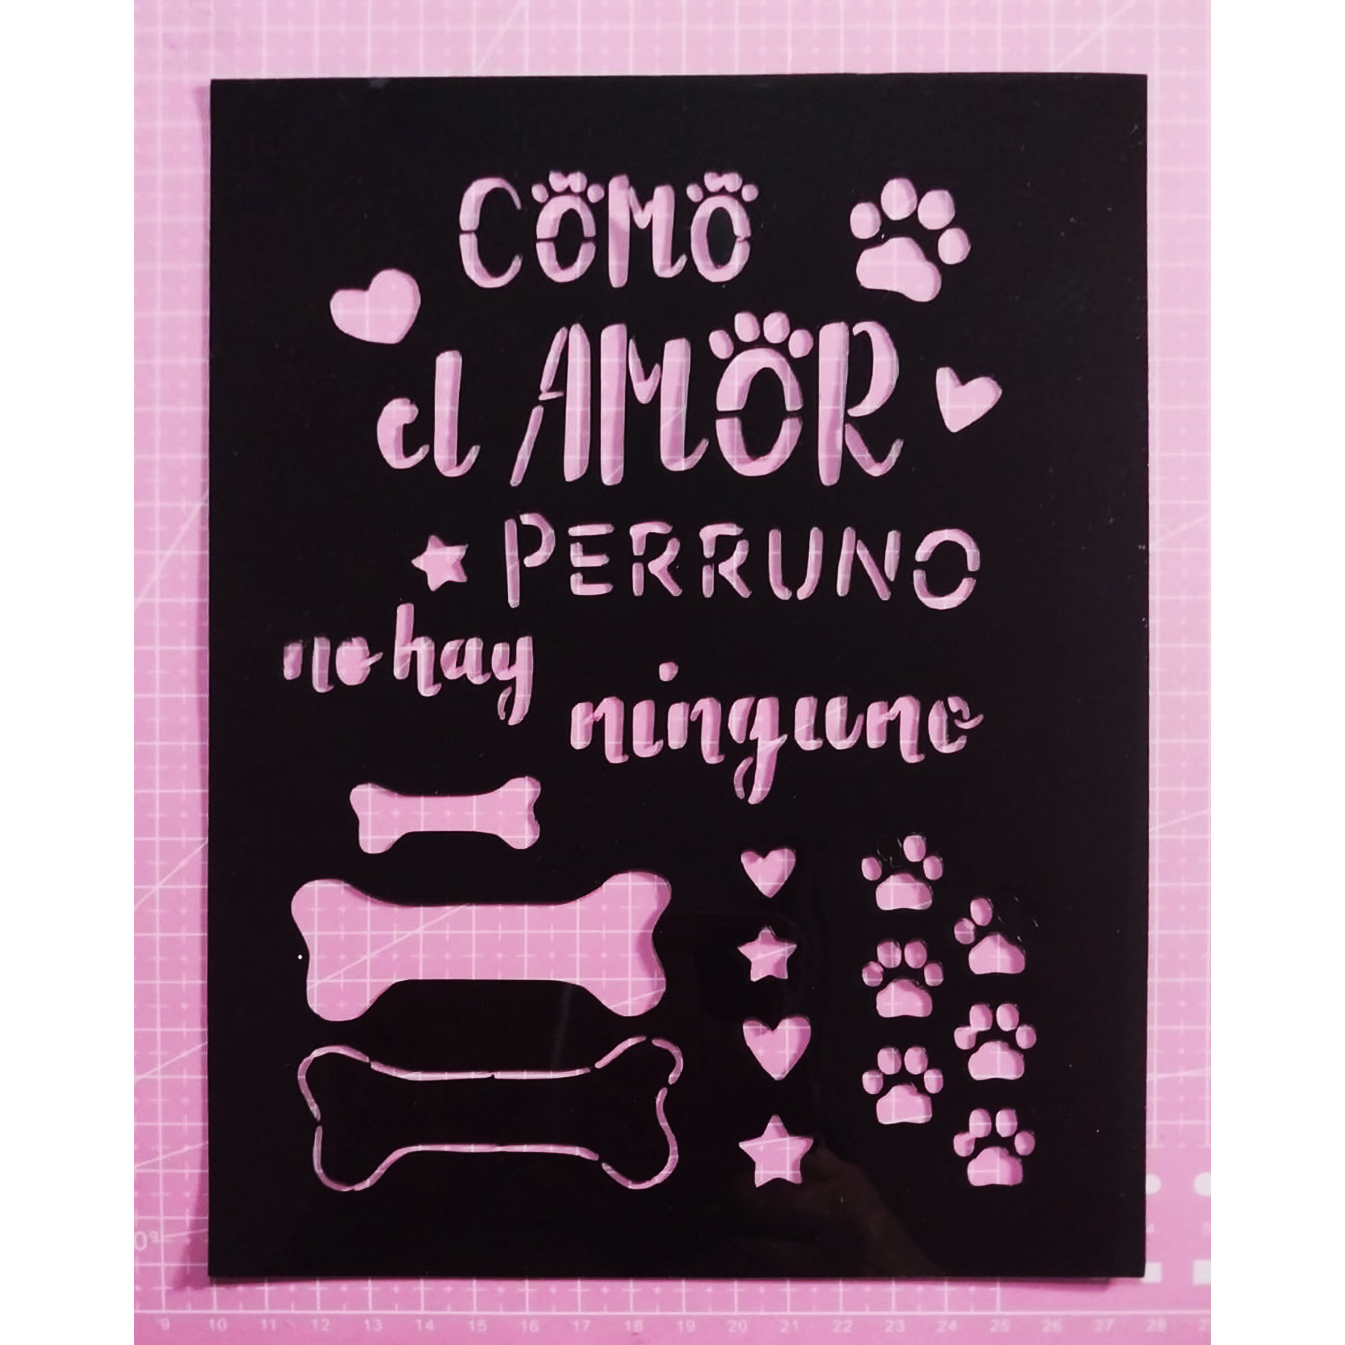 Stencil texto "Como el amor perruno, no hay ninguno" 18x25 cms (S165)